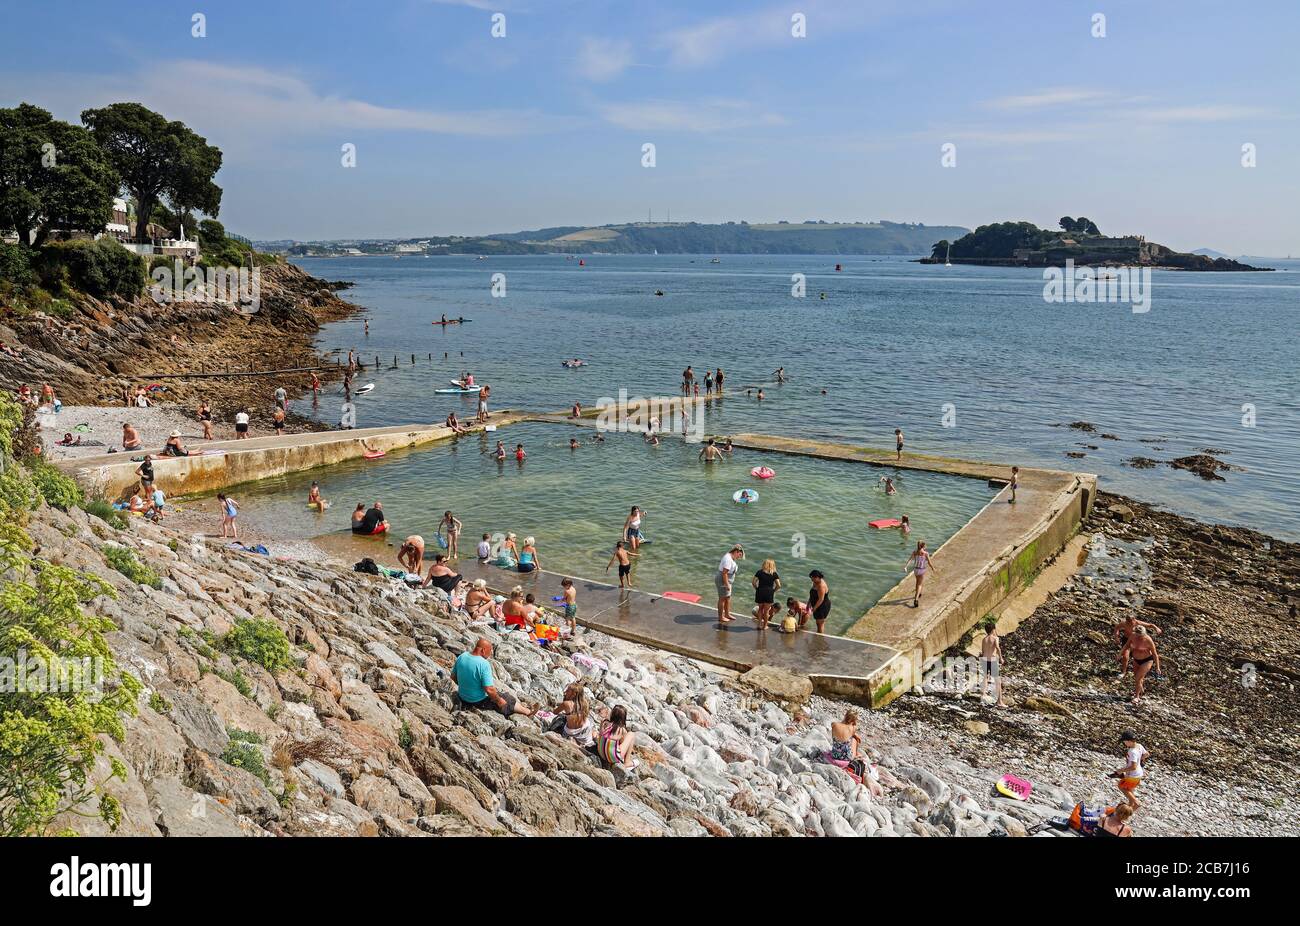 Les baigneurs apprécient la piscine extérieure d'eau de mer de Devil's point AKA Western Kings lors d'une chaude journée d'été au bord de mer à Stonehouse, Plymouth. Une eau de mer Banque D'Images